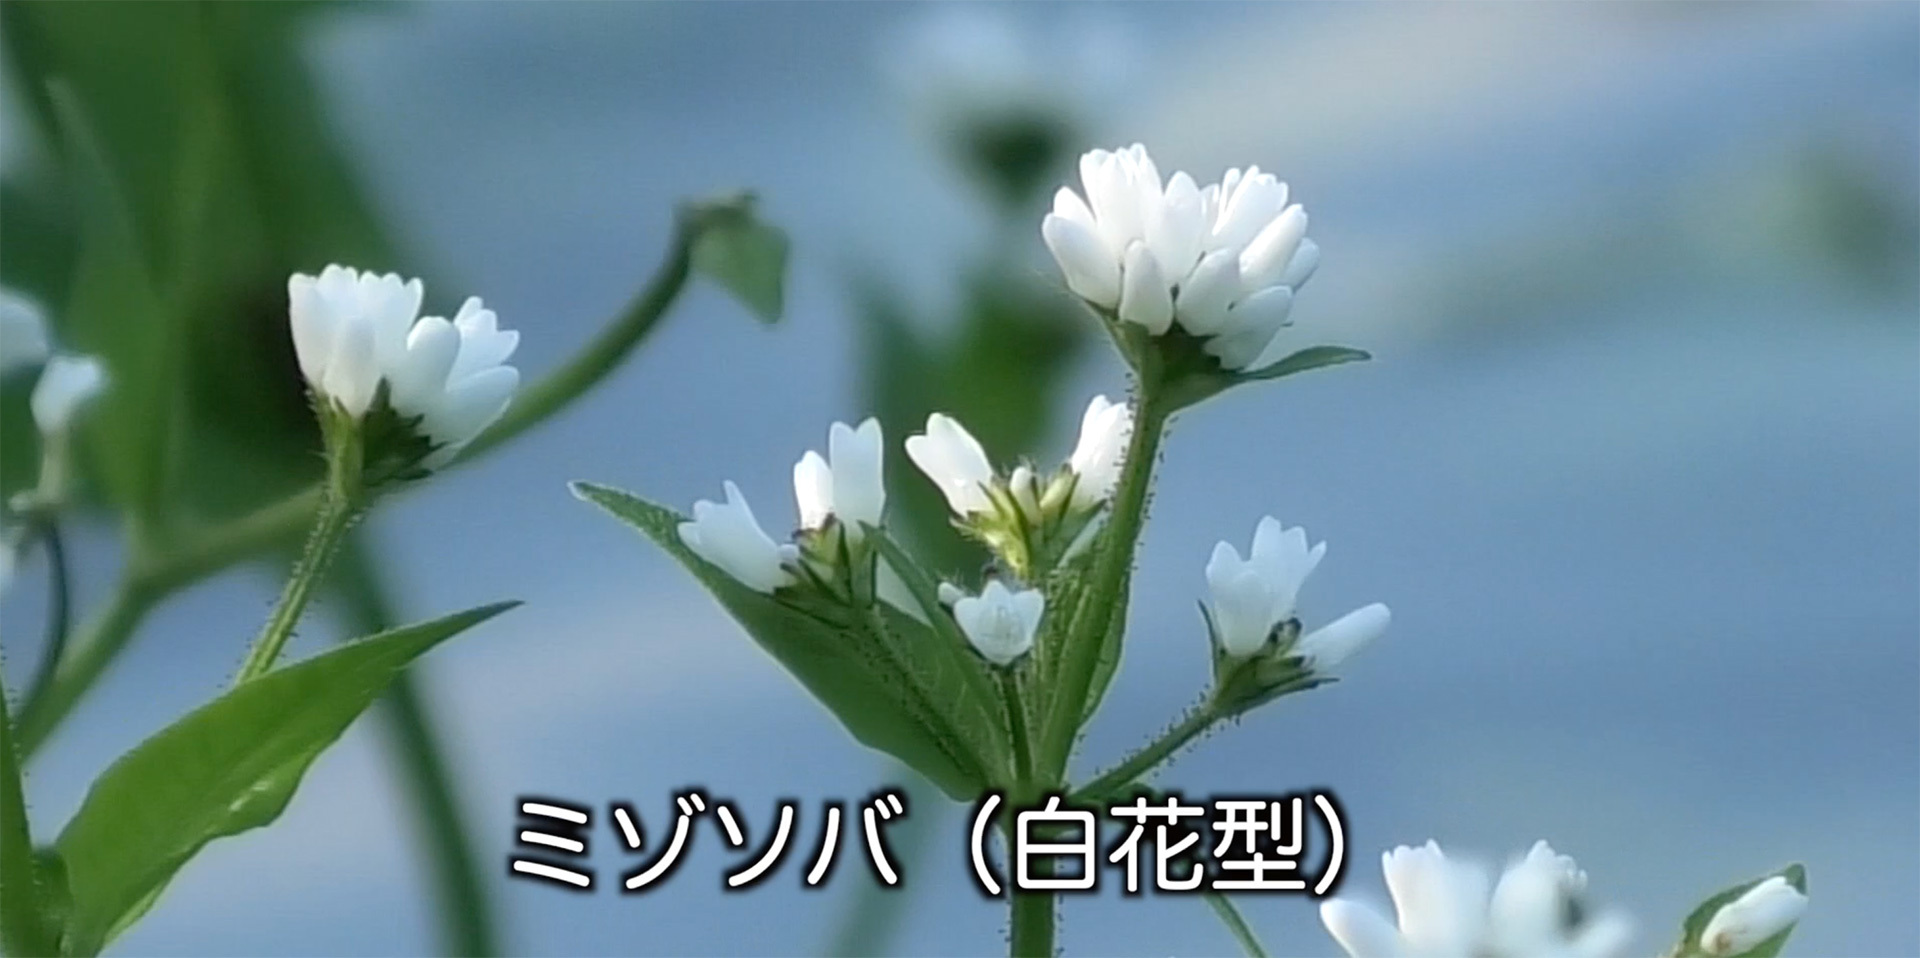 白い花を咲かせたミゾソバ